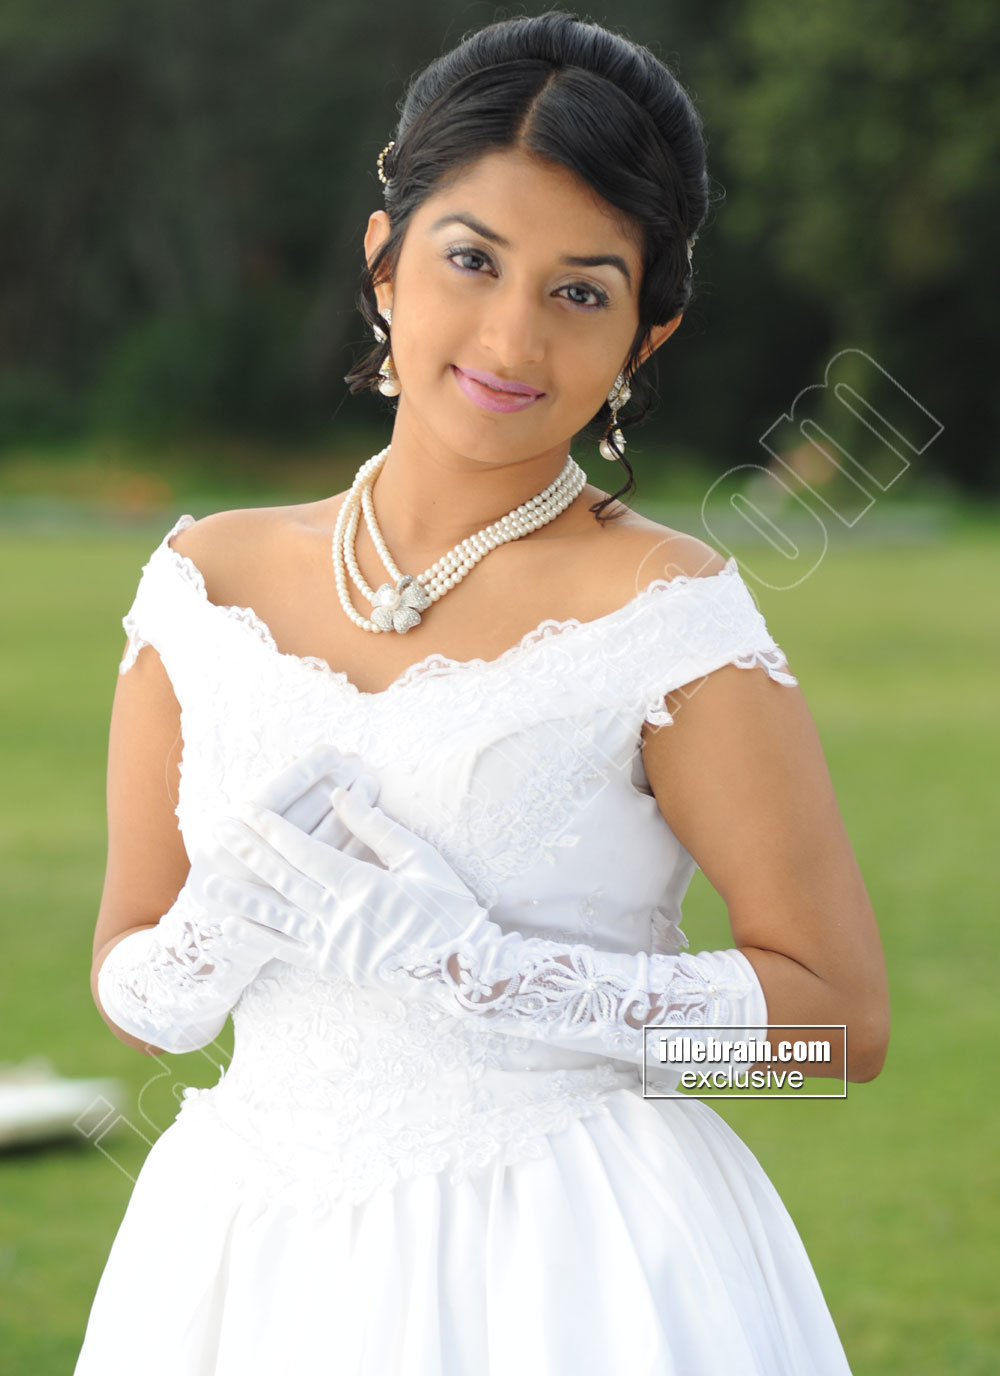 മിഷല്ലെക്ക് മിന്നുകെട്ട്; ചടങ്ങിൽ താരമായി ദിലീപ്; ഇവർ തമ്മിൽ എത്രയും വേഗം  ഒരു ചിത്രം വരണമെന്ന് ആരാധകർ! - meera jasmine sister daughter wedding actor  dileep shines on ...